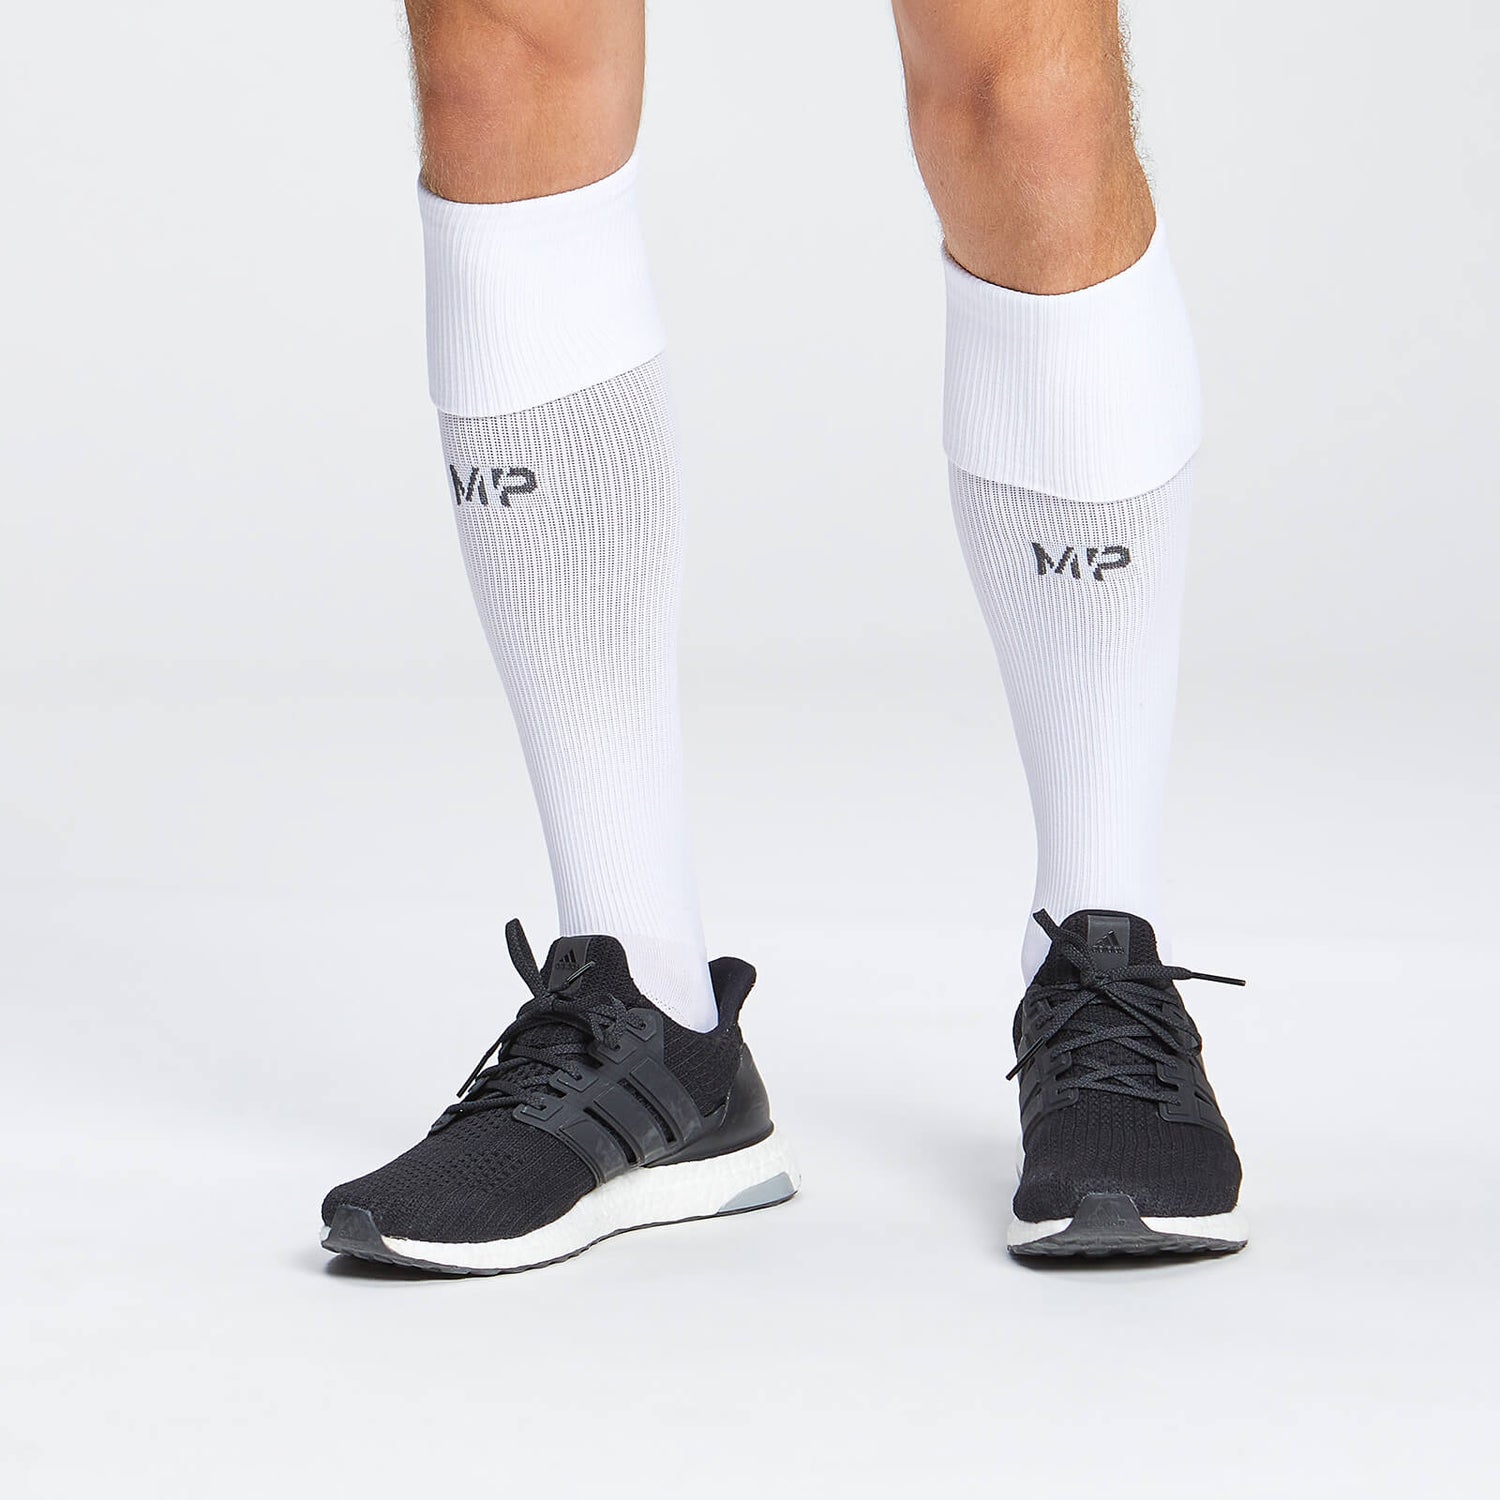 MP Full Length Football Socks – HVid - UK 3-6